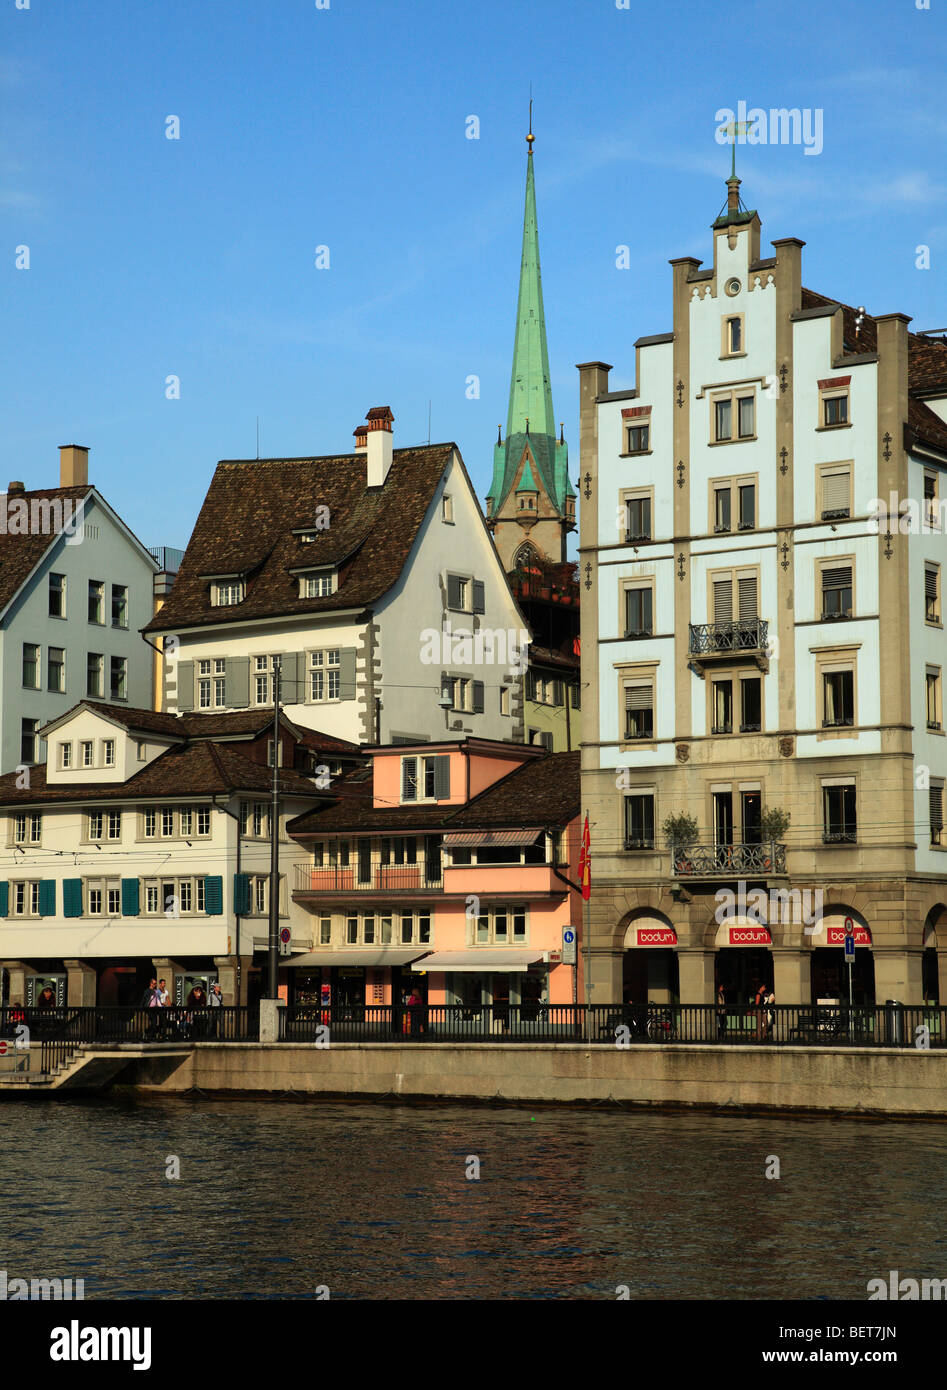 Switzerland, Zurich, Limmat Quai, river, street scene, architecture Stock Photo